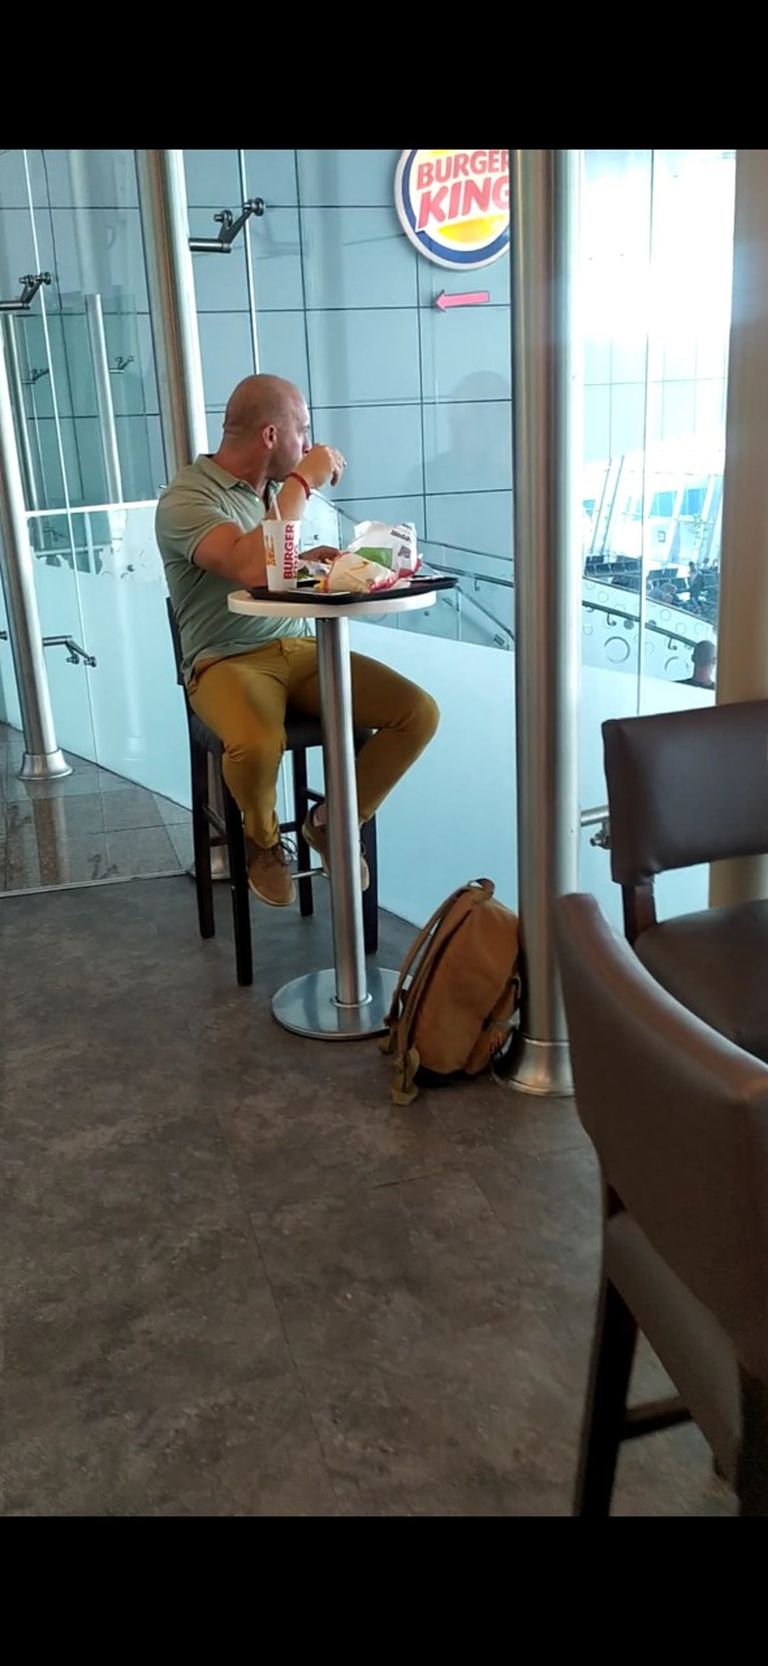 Elu24le saadetud lugeja pilt, kus Erik Orgu naudib puhkust ja sööb lennujaama Burger King kiirtoidukohas burksi.